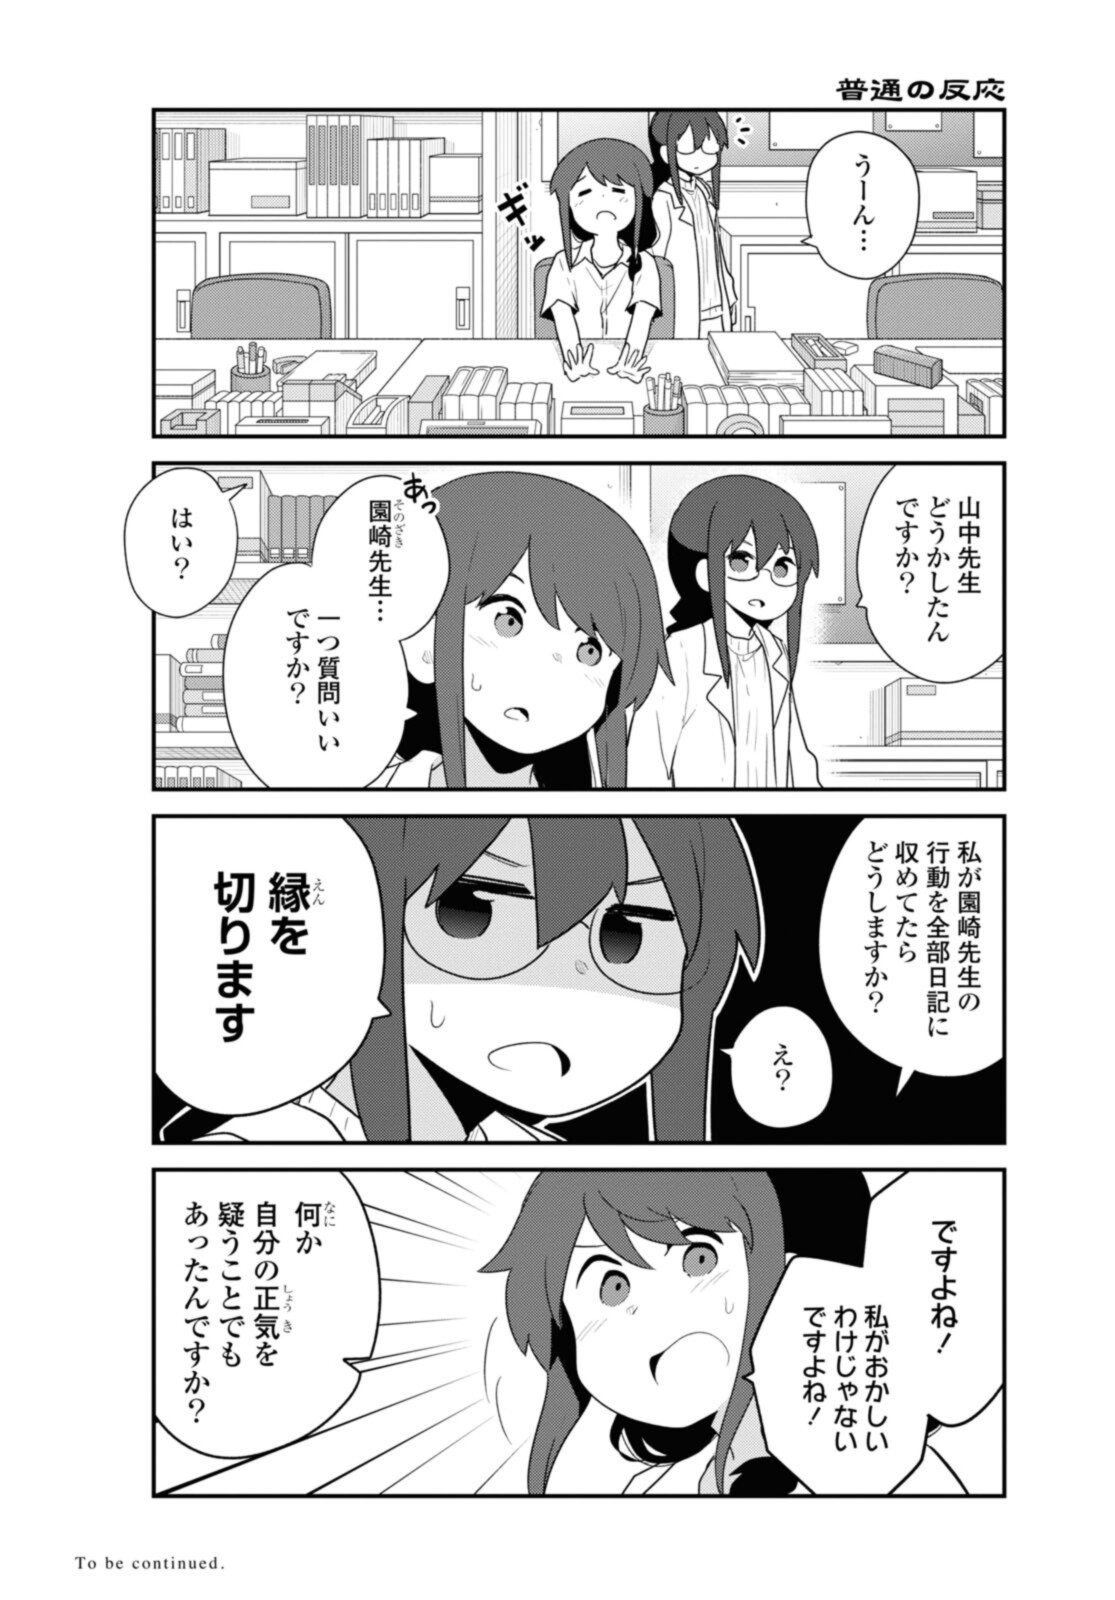 Watashi ni Tenshi ga Maiorita! - Chapter 96 - Page 16